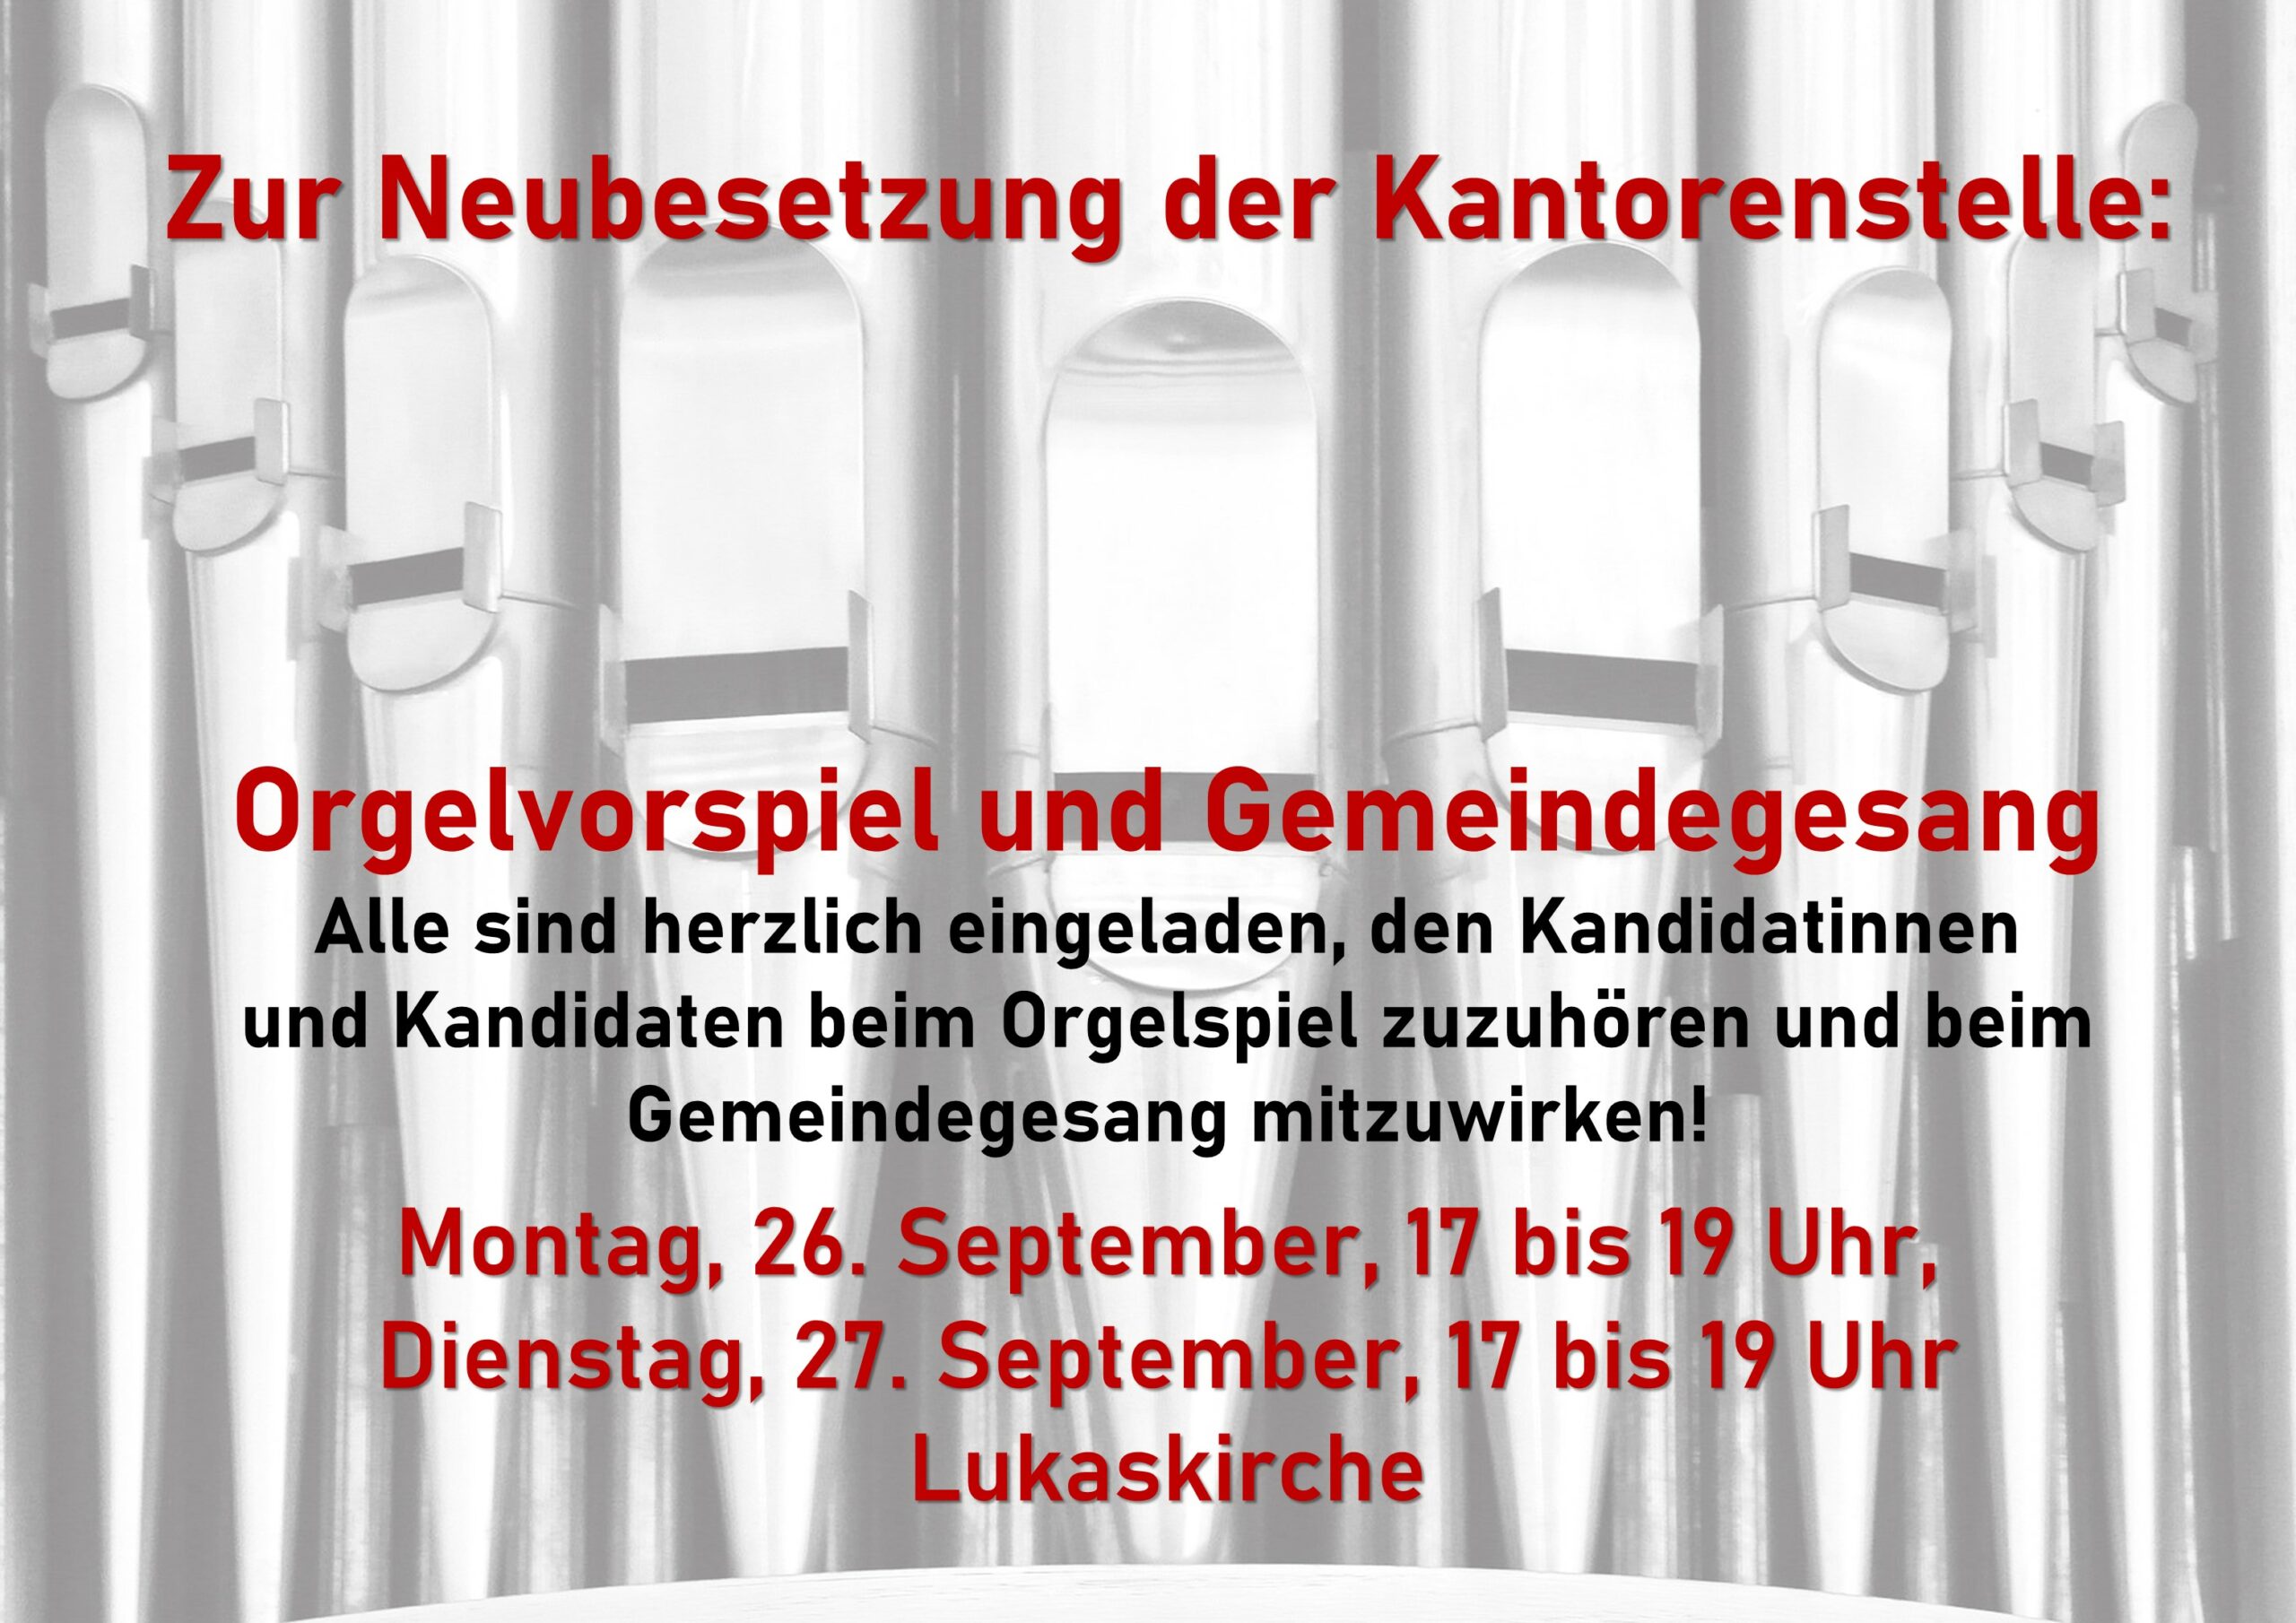 Neubesetzung der Kantorenstelle - Orgelvorspiel und Gemeindesingen - Dienstag, 27. Spetember, jeweils 17-19 Uhr, Lukaskirche, Kaiser-Karl-Ring 25A